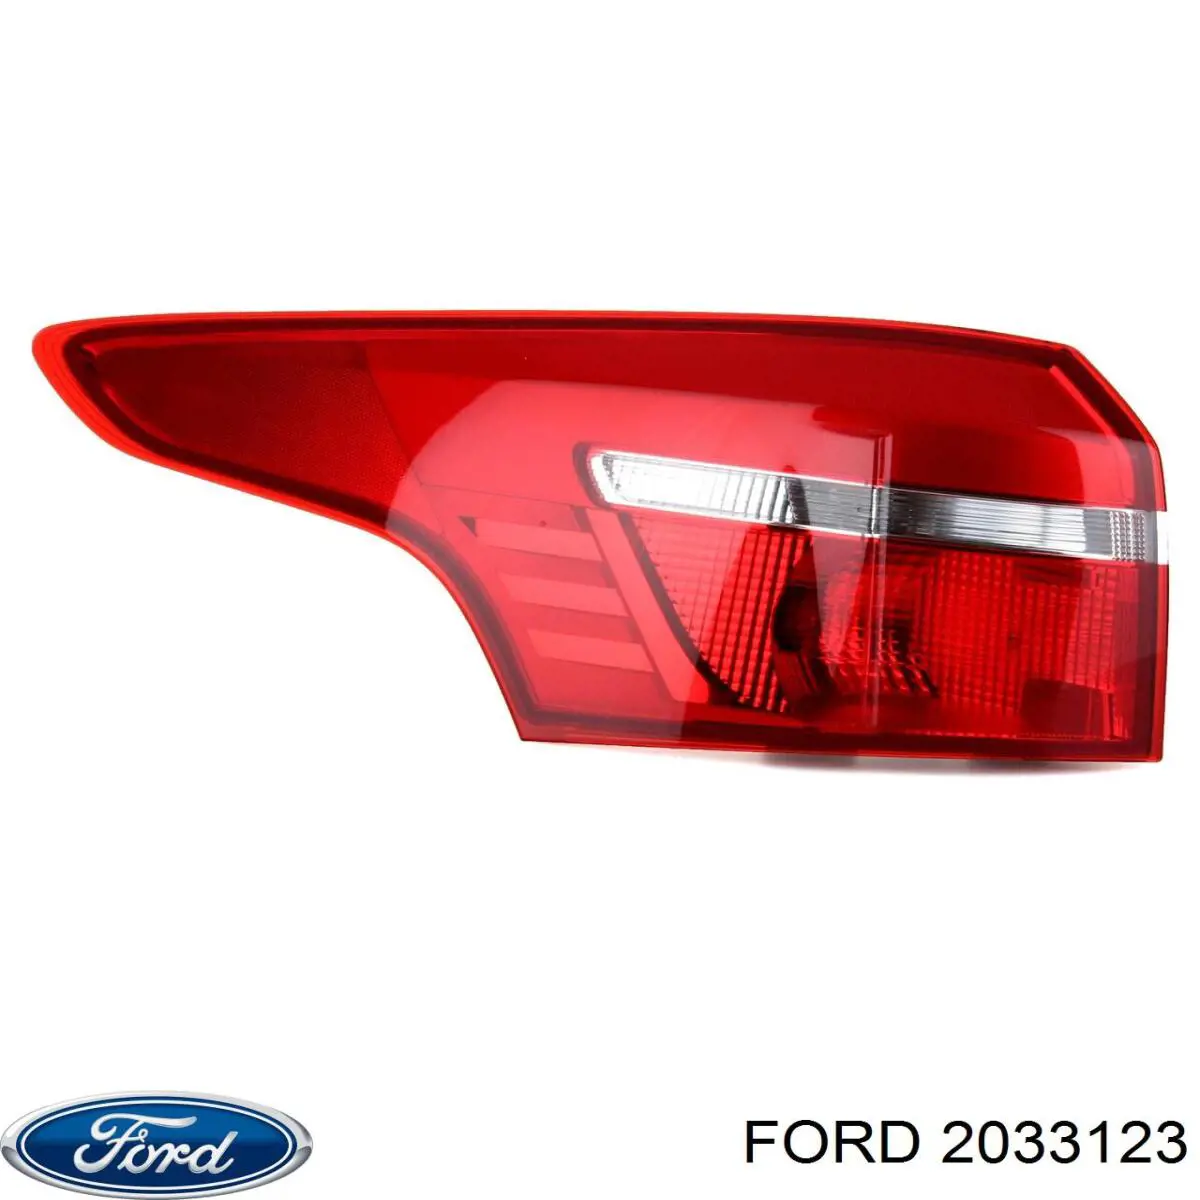 2033123 Ford lanterna traseira esquerda externa